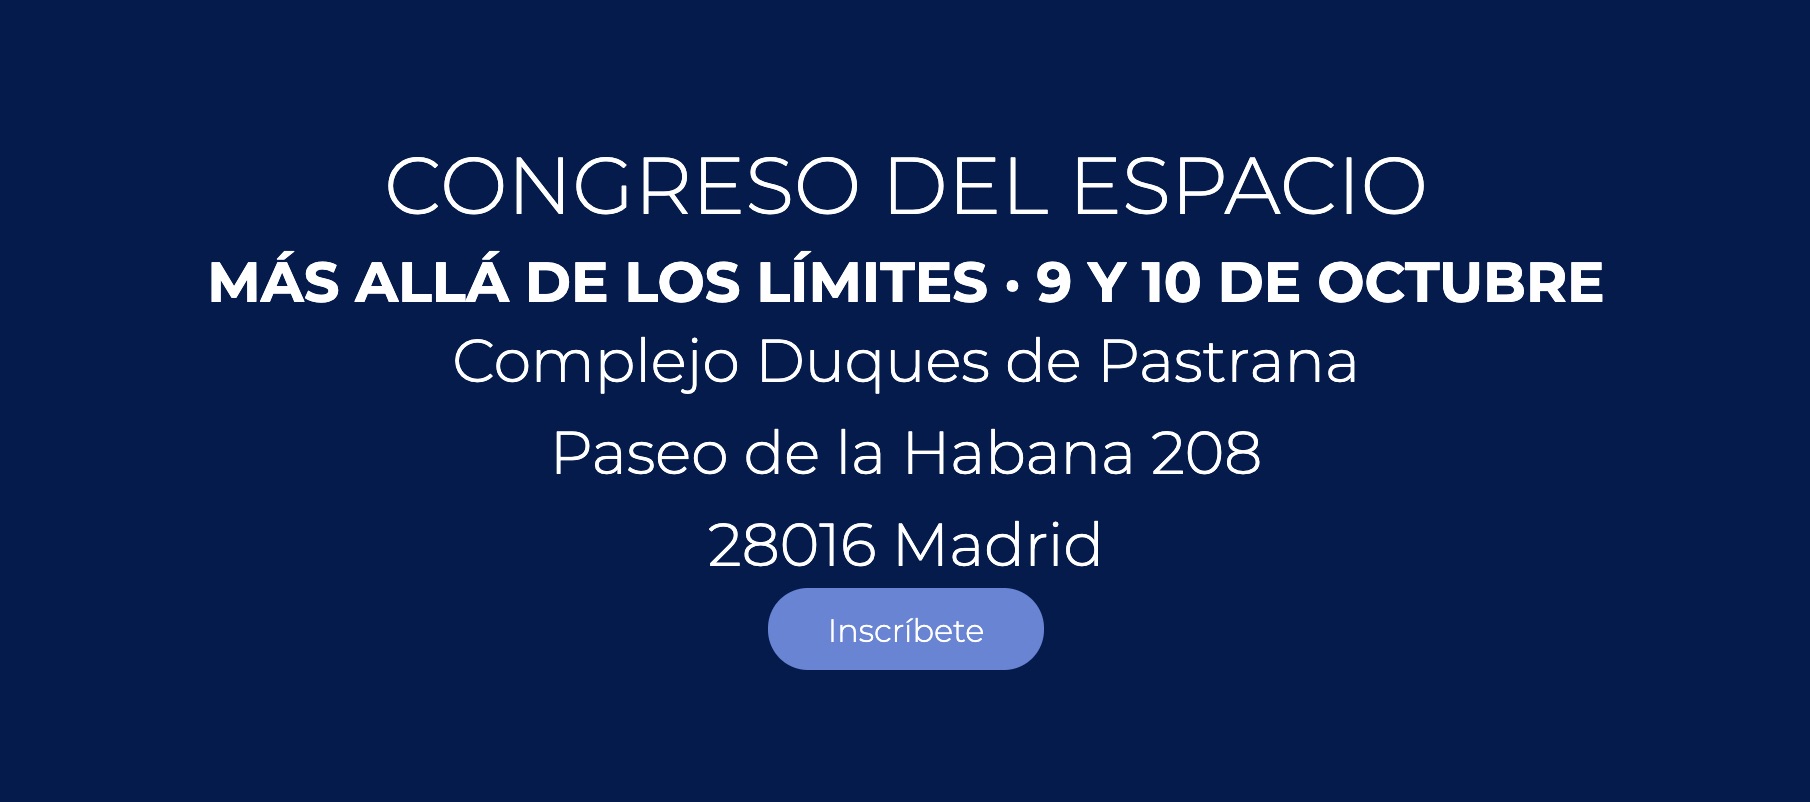 Congreso del Espacio, Madrid, España